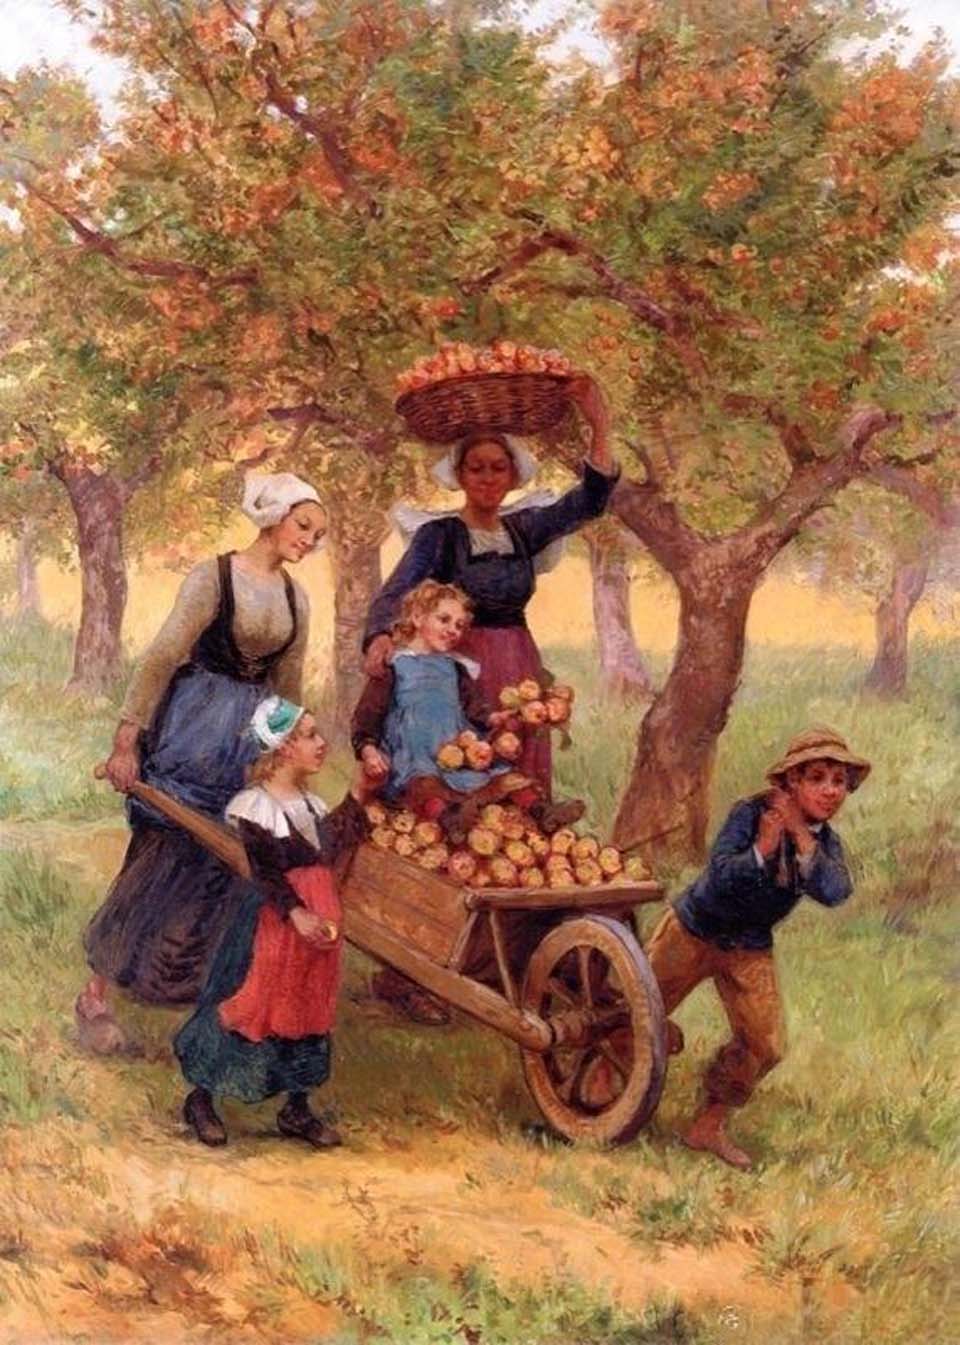 Récolte des pommes